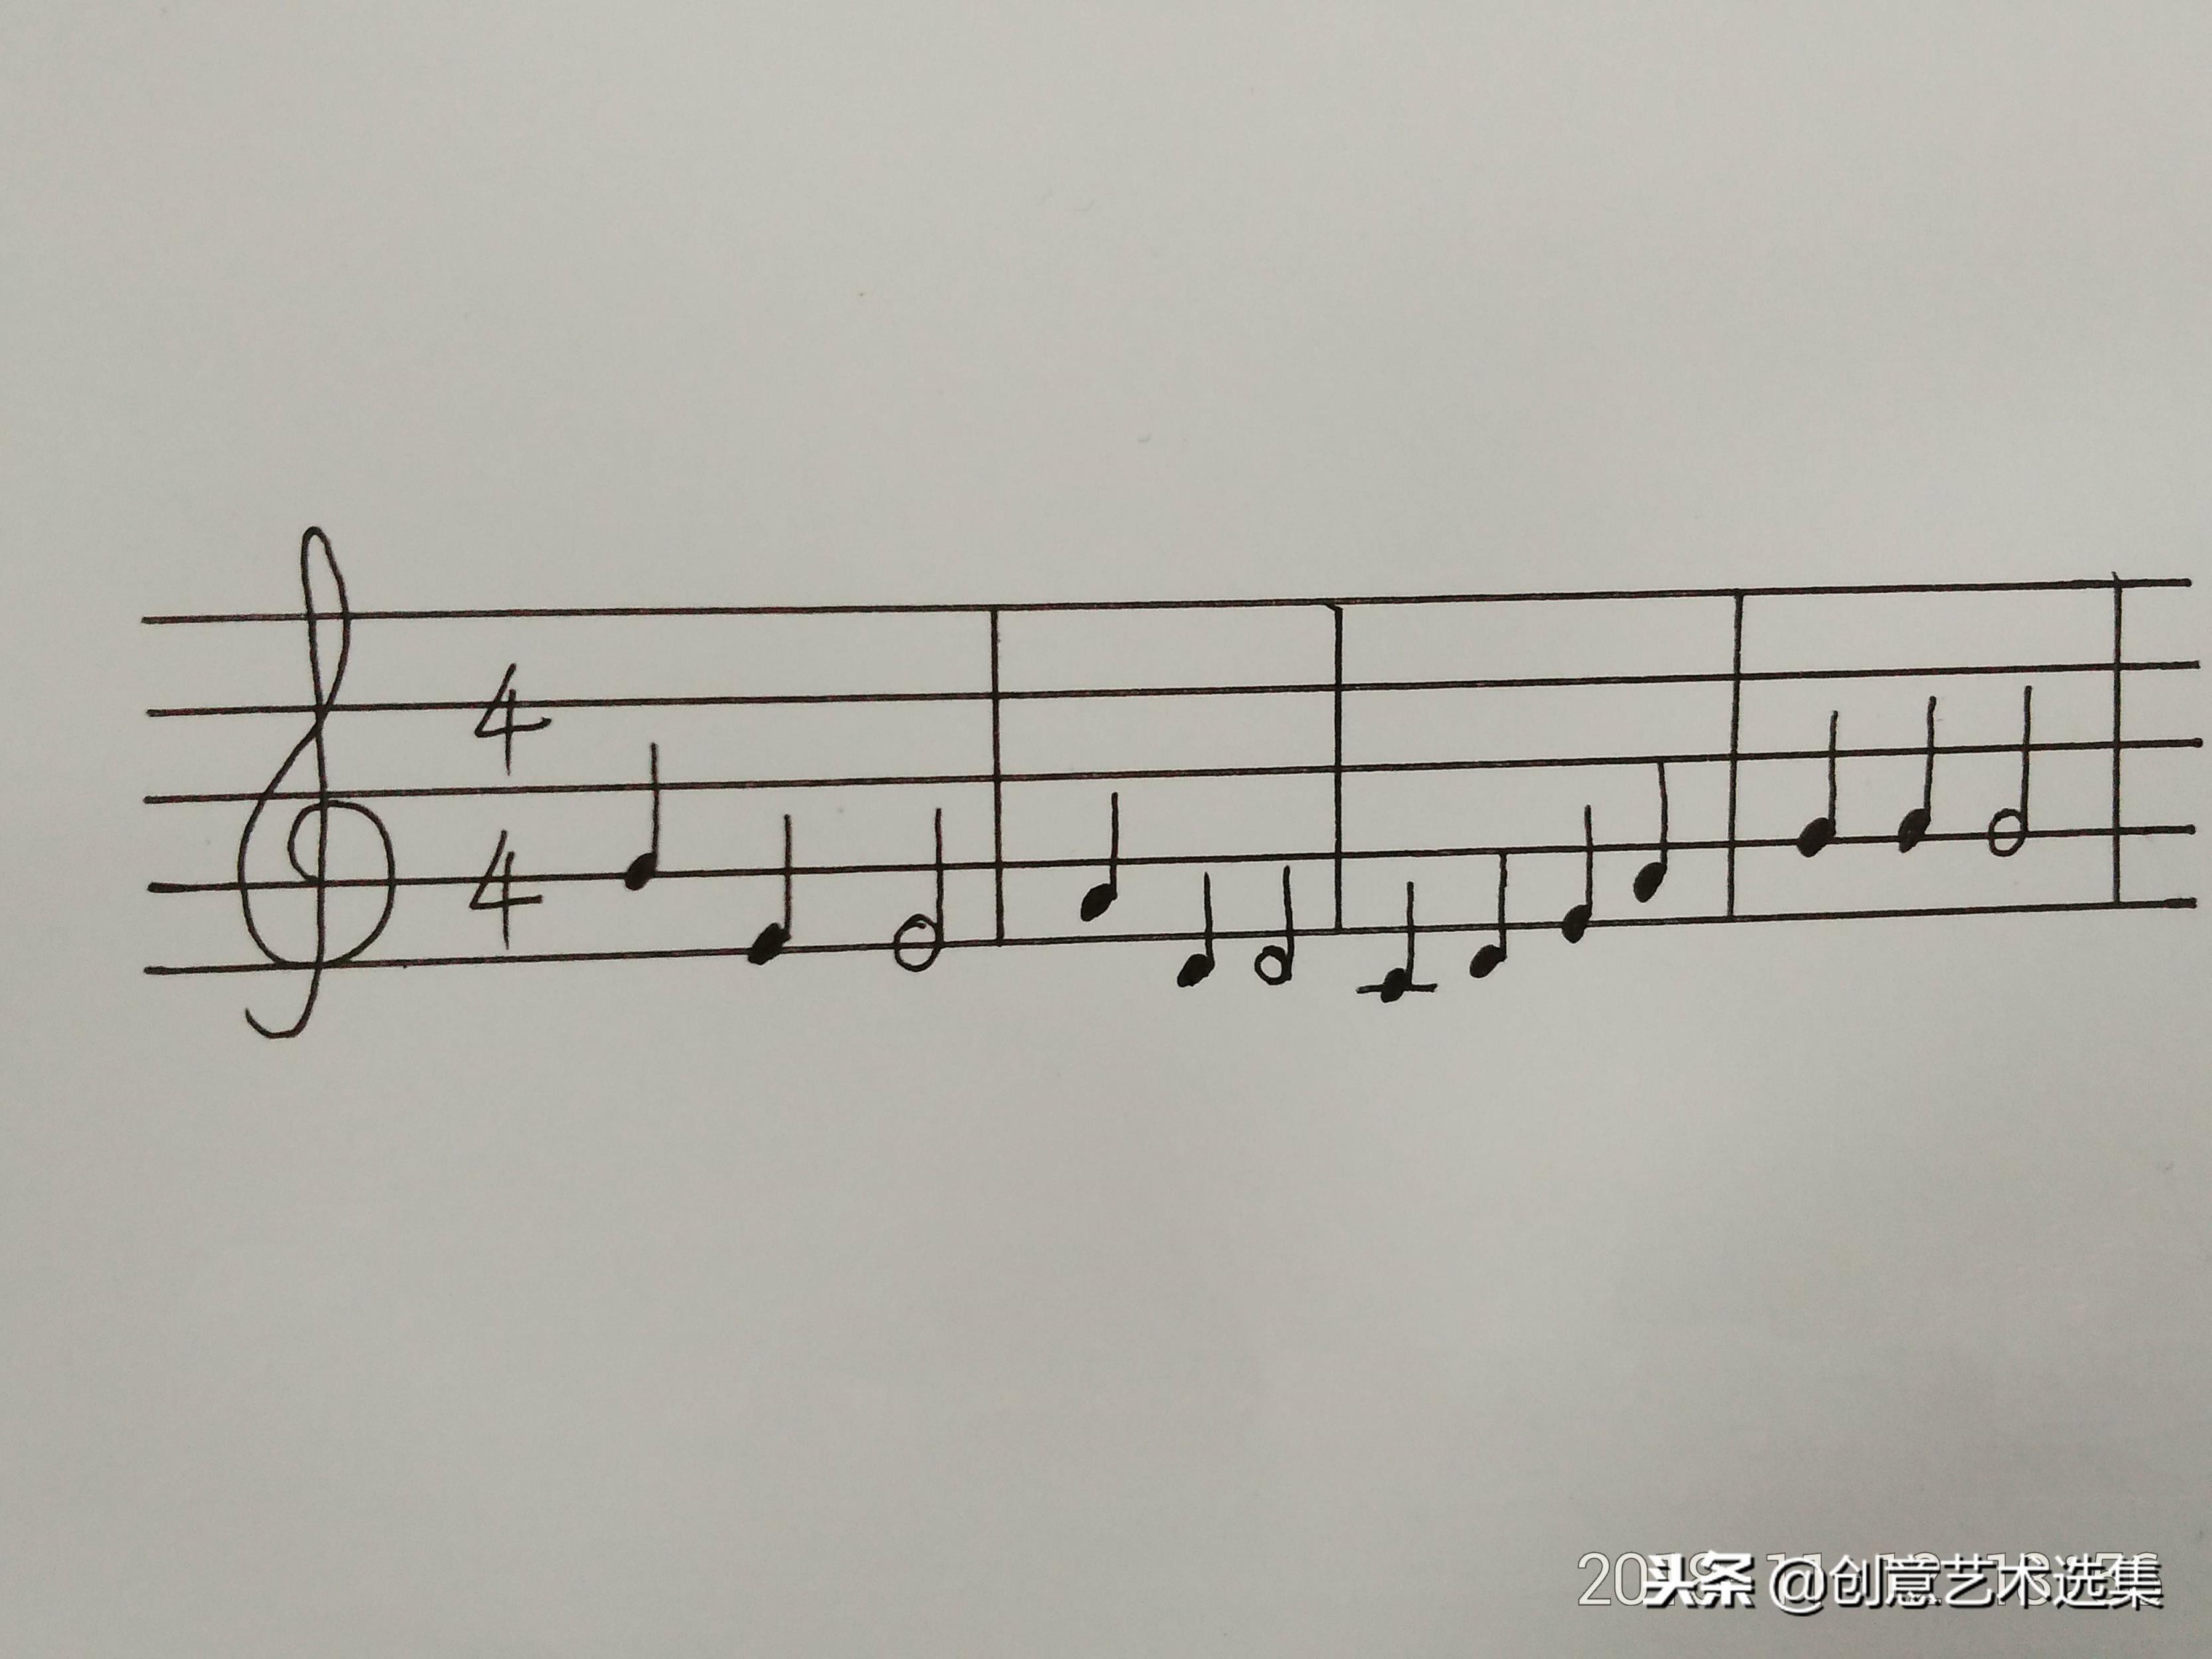 五线谱上画的是什么五线谱上的音符和休止符